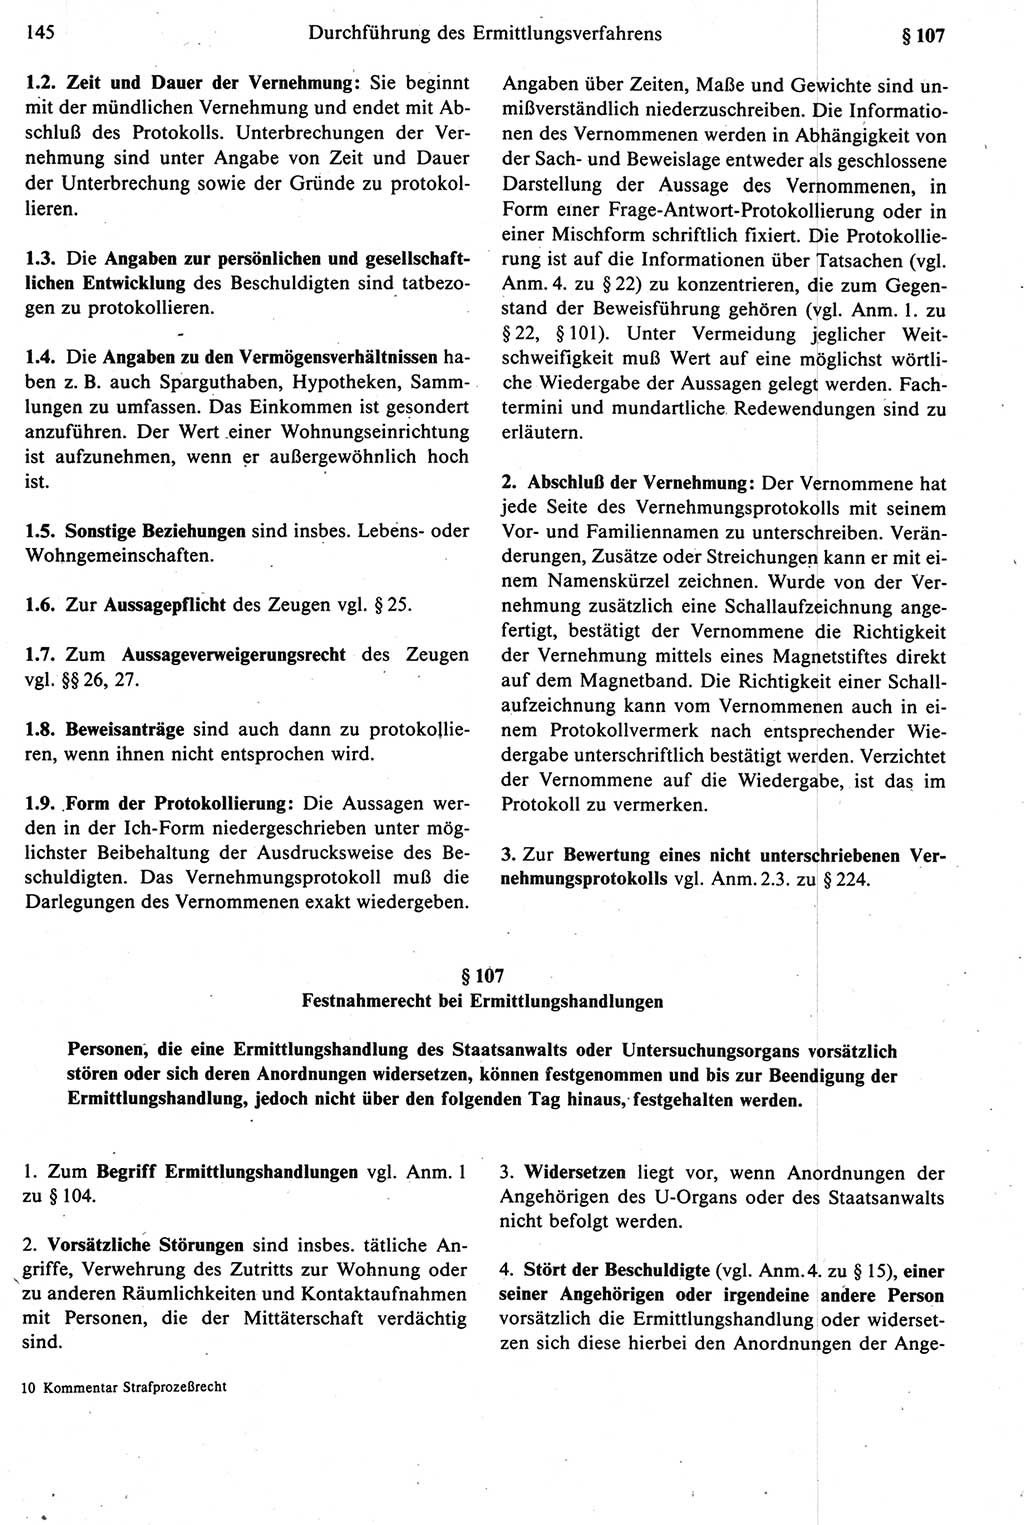 Strafprozeßrecht der DDR [Deutsche Demokratische Republik], Kommentar zur Strafprozeßordnung (StPO) 1987, Seite 145 (Strafprozeßr. DDR Komm. StPO 1987, S. 145)